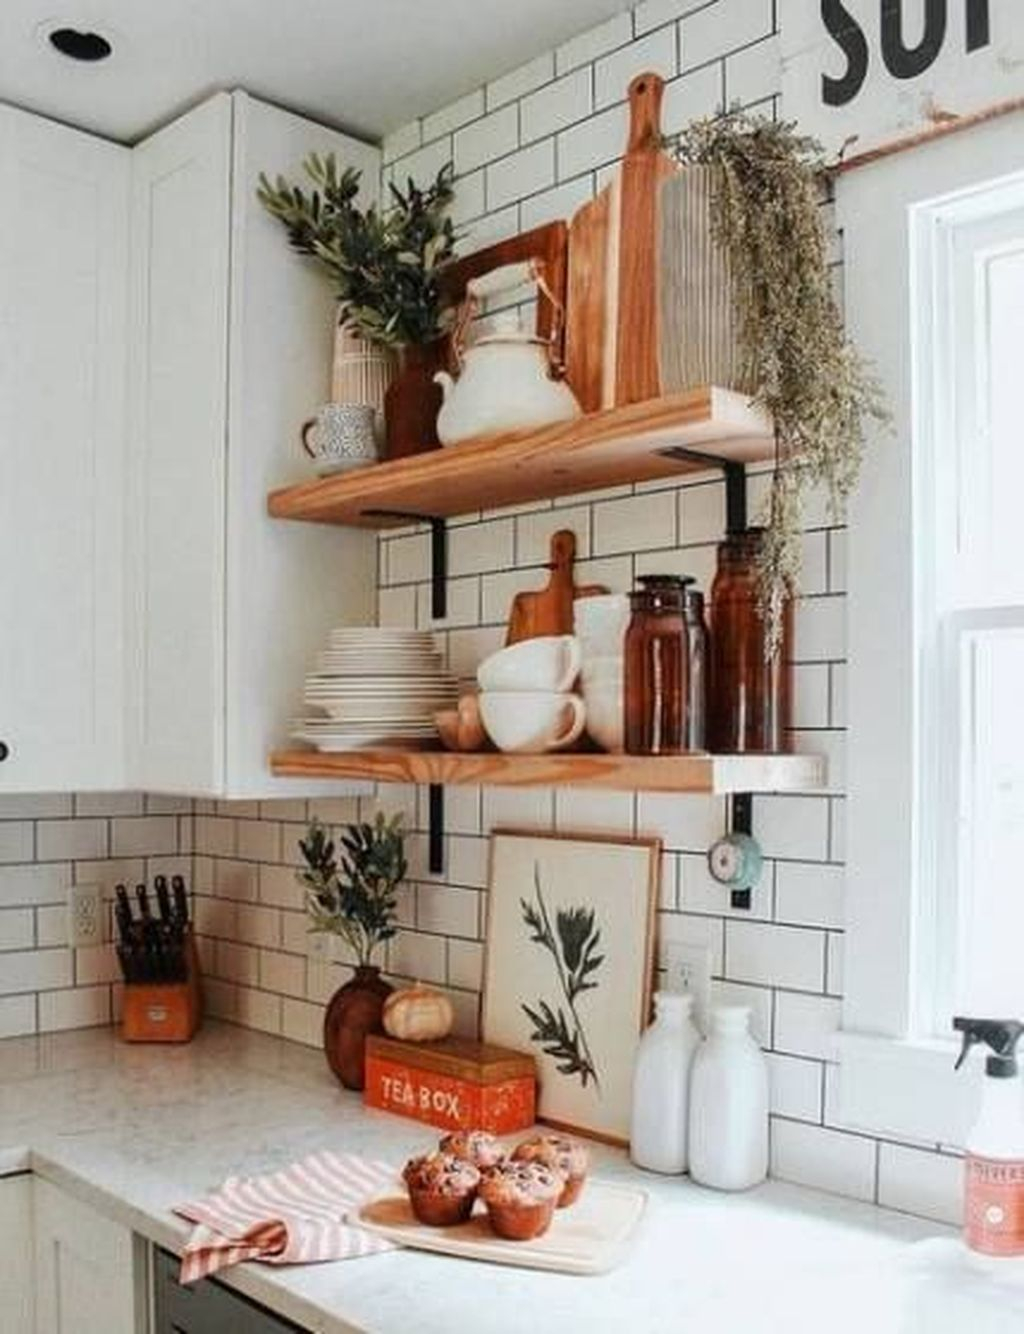 Wonderful Industrial Kitchen Shelf Design Ideas To Organize Your Kitchen01